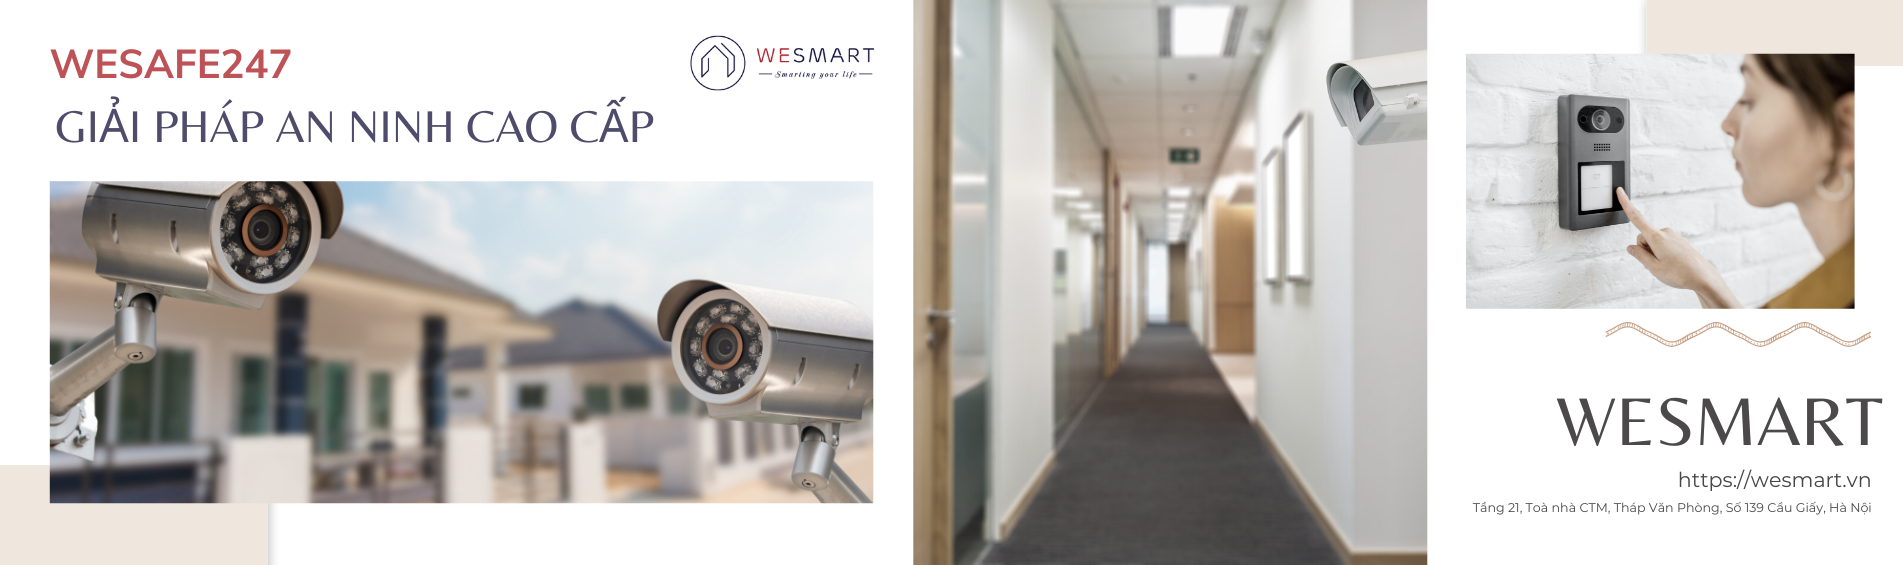 Wesafe247 - Giải pháp an ninh cao cấp của wesmart